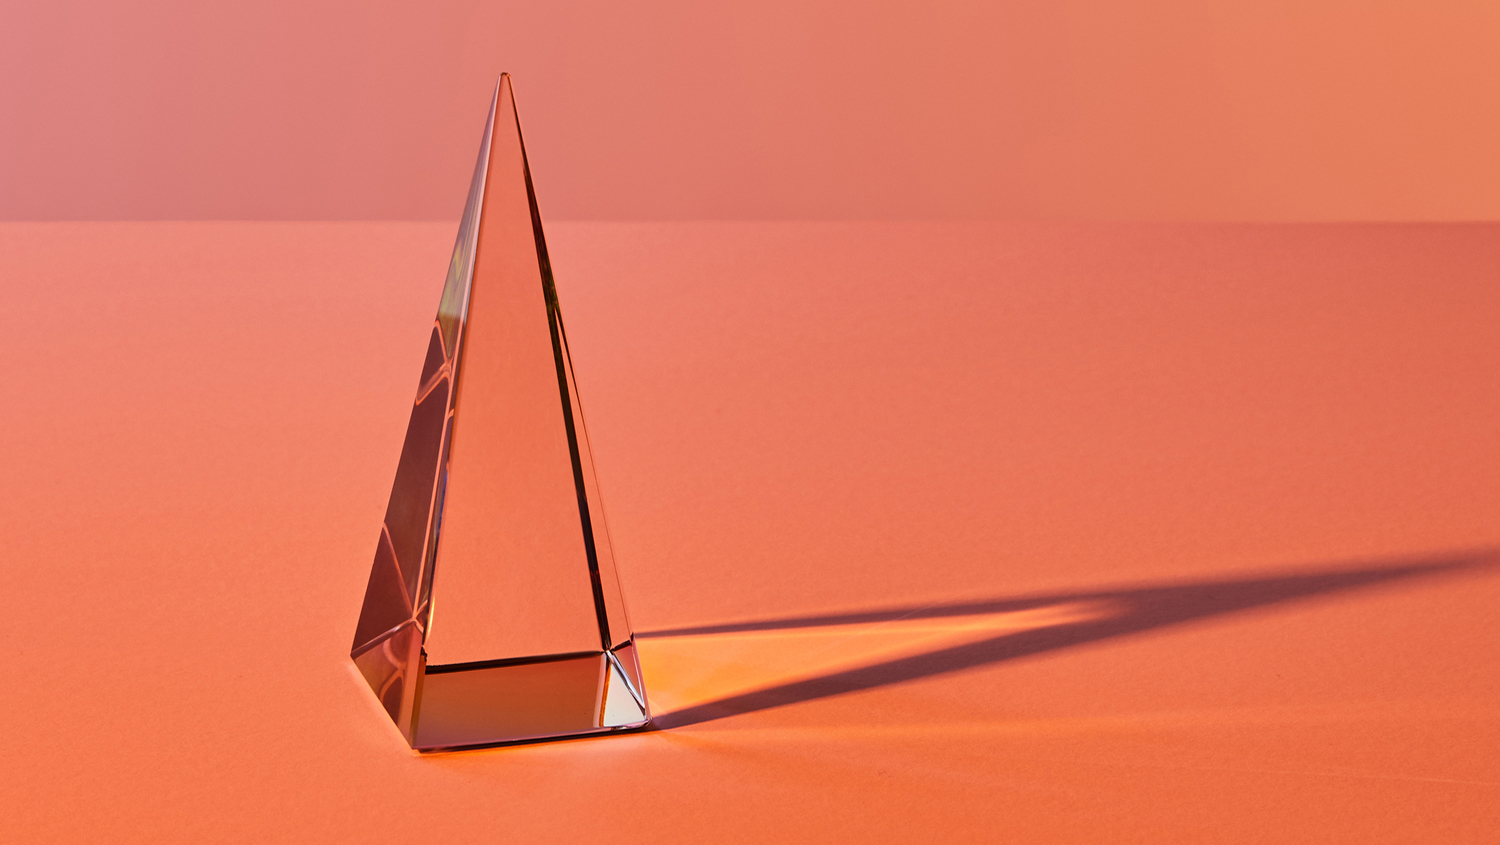 Genomskinlig spetsig glaspyramid. Även skuggan syns mot botten av tre olika orange nyanser.